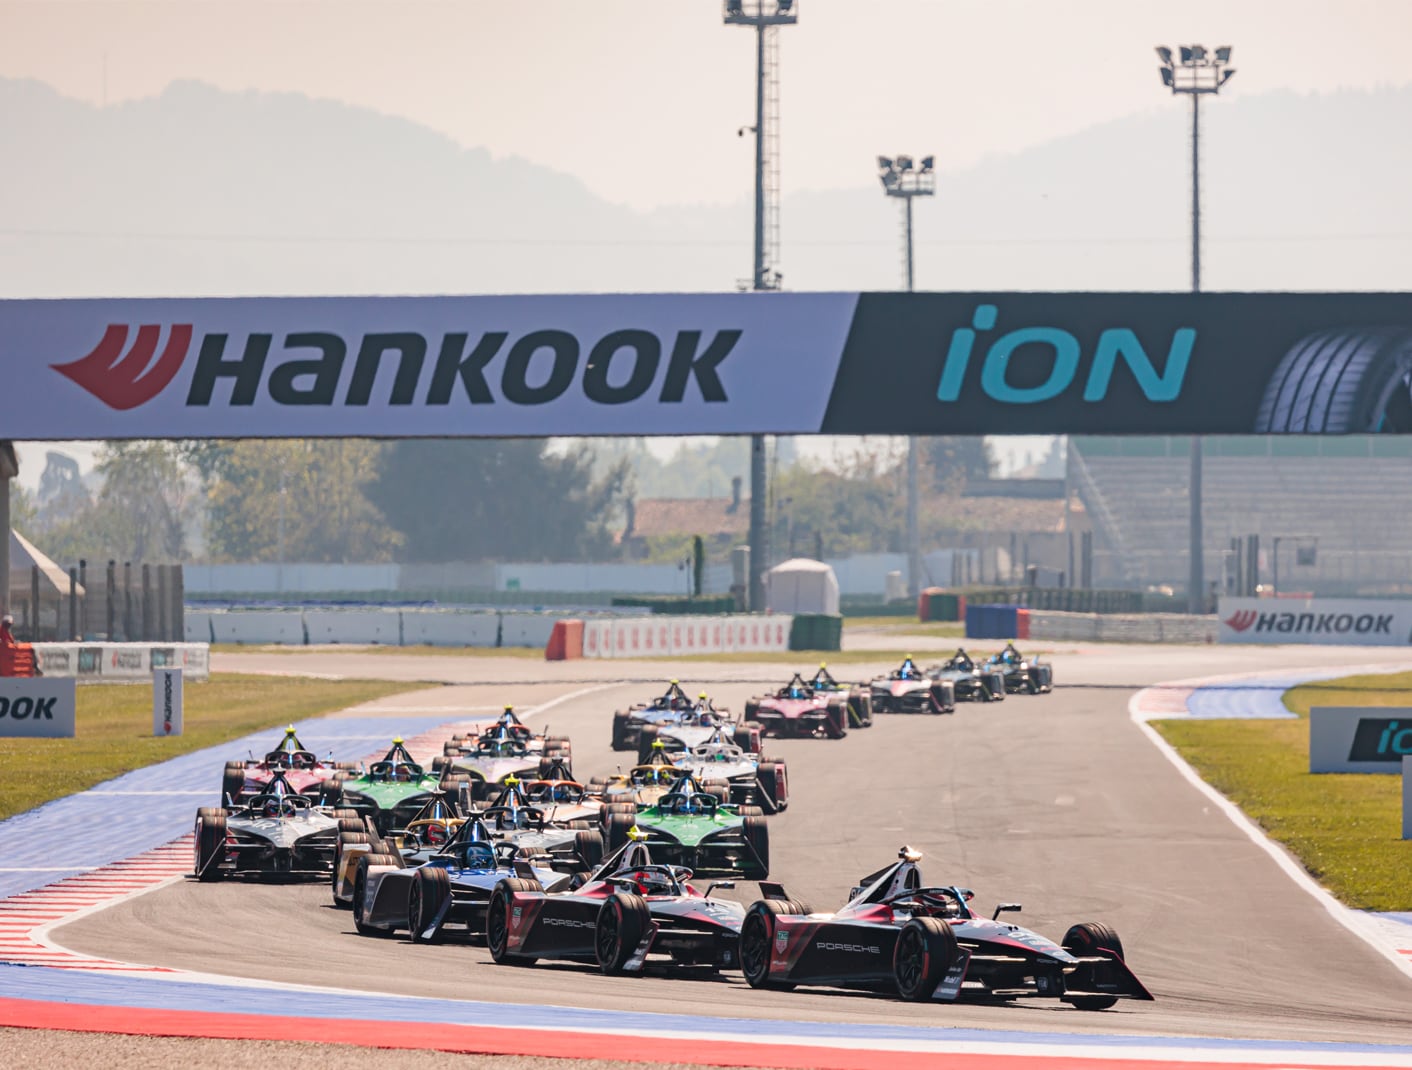 Los altos niveles de agarre, cortesía de Hankook iON Race, crean dos emocionantes carreras de Fórmula E en Italia.